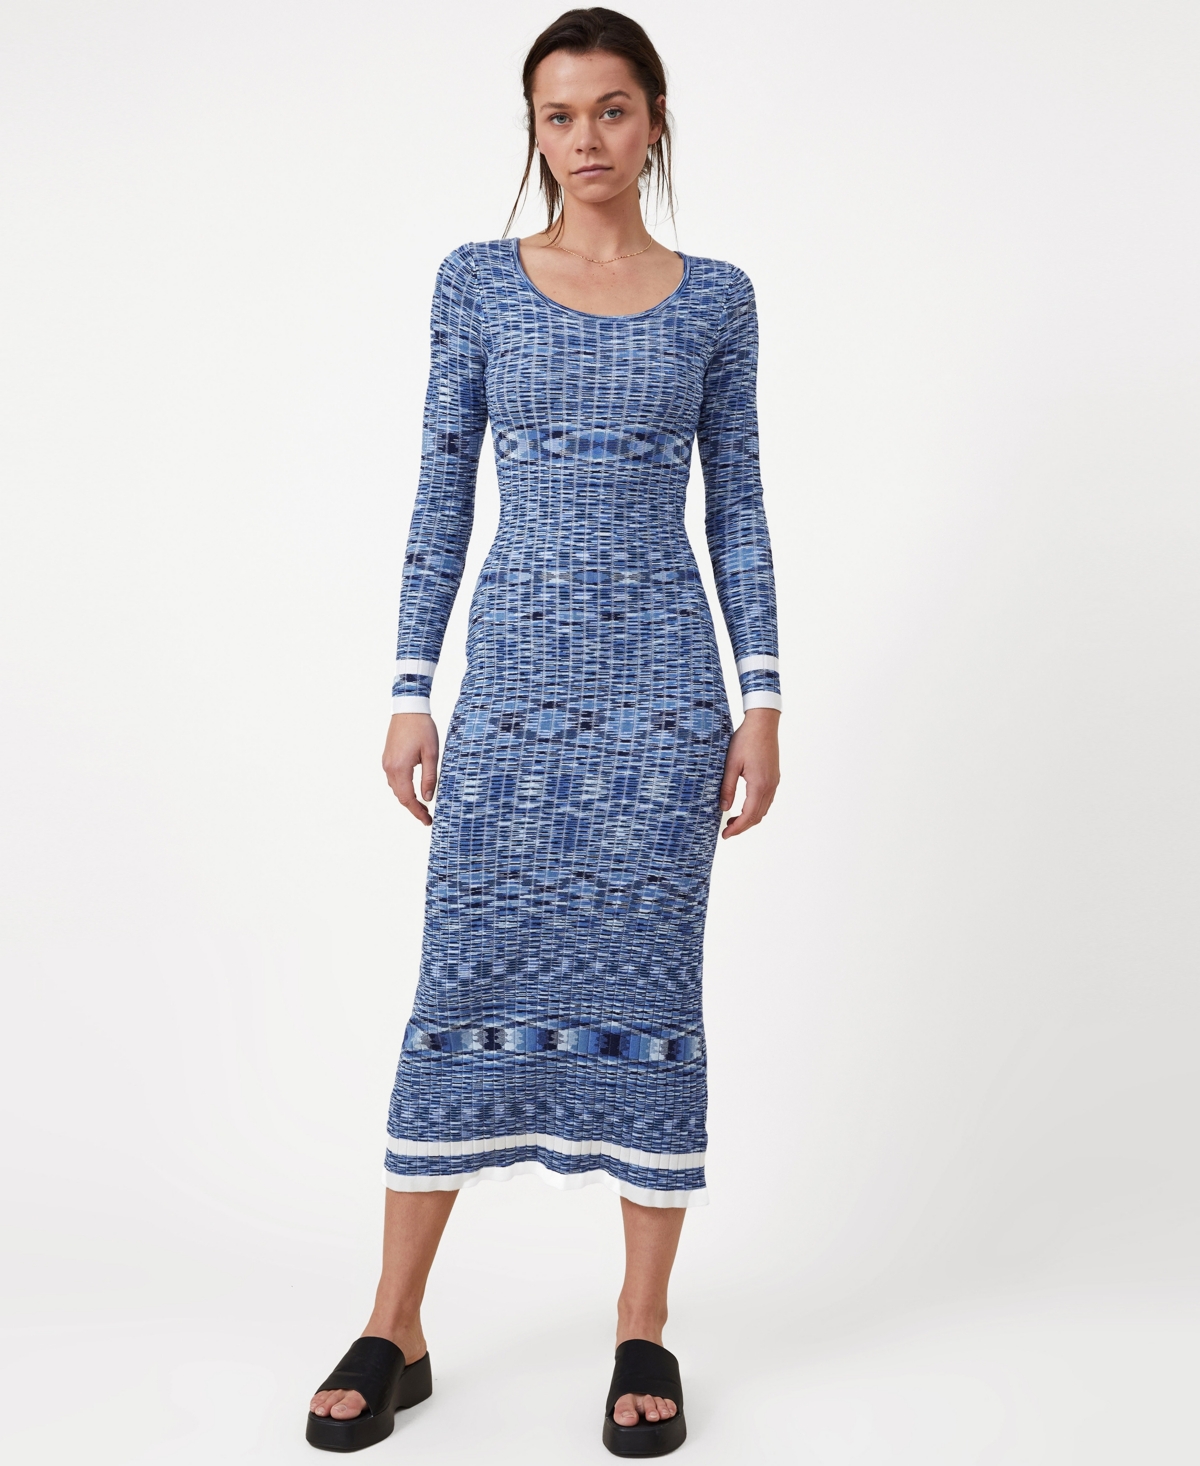 Cotton On Women's Space Dye Knit Midaxi Dress In Blue Space Dye